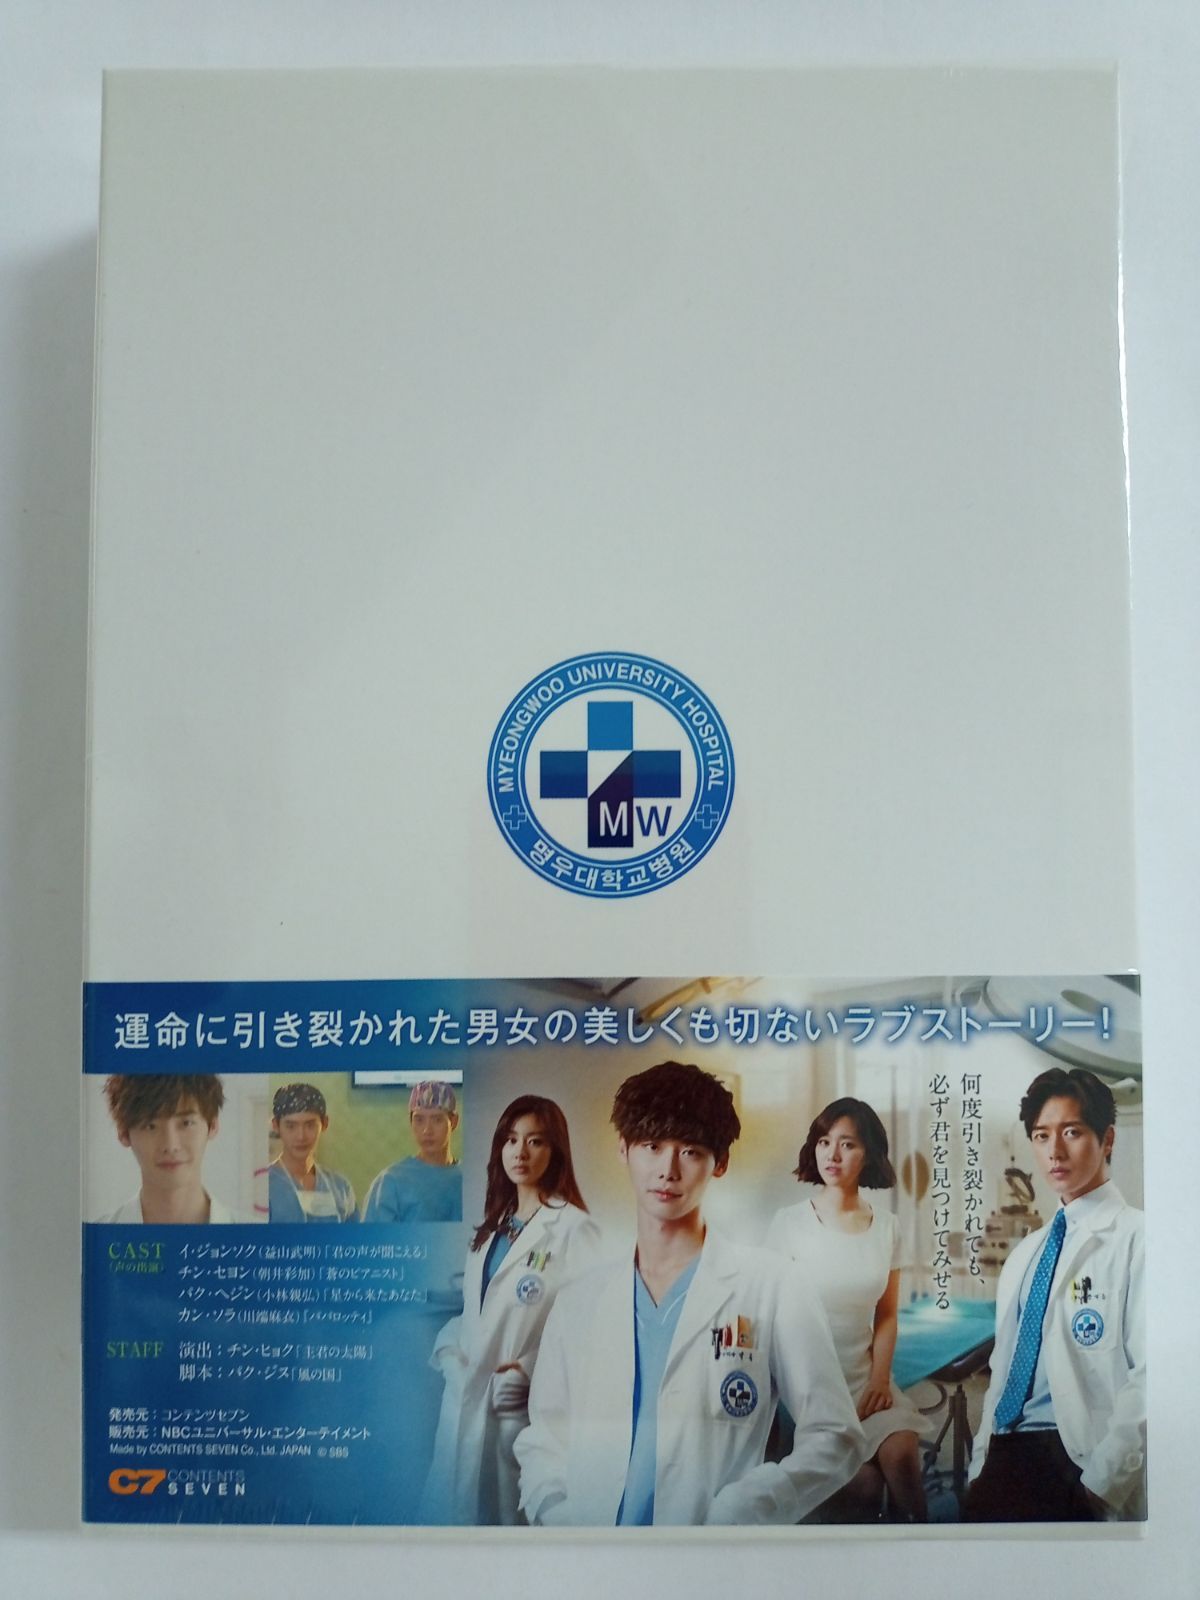 韓国ドラマ ドクター異邦人 DVD-BOX2 - コリタメドットコム - メルカリ